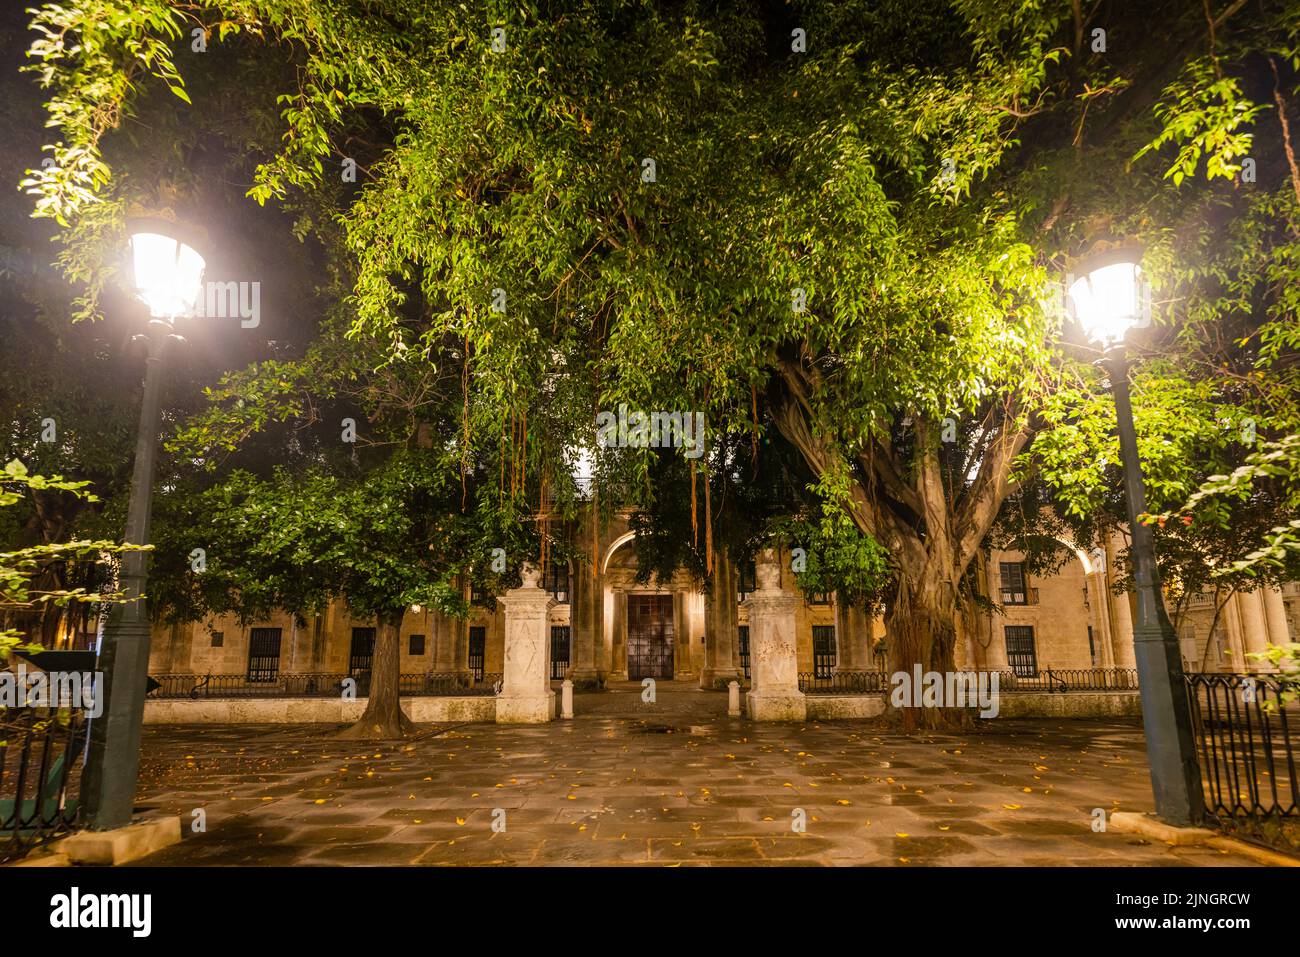 CITTÀ DELL'AVANA, CUBA - 2 GENNAIO: Plaza de Armas di notte il 2 gennaio 2021 a l'Avana, Cuba Foto Stock